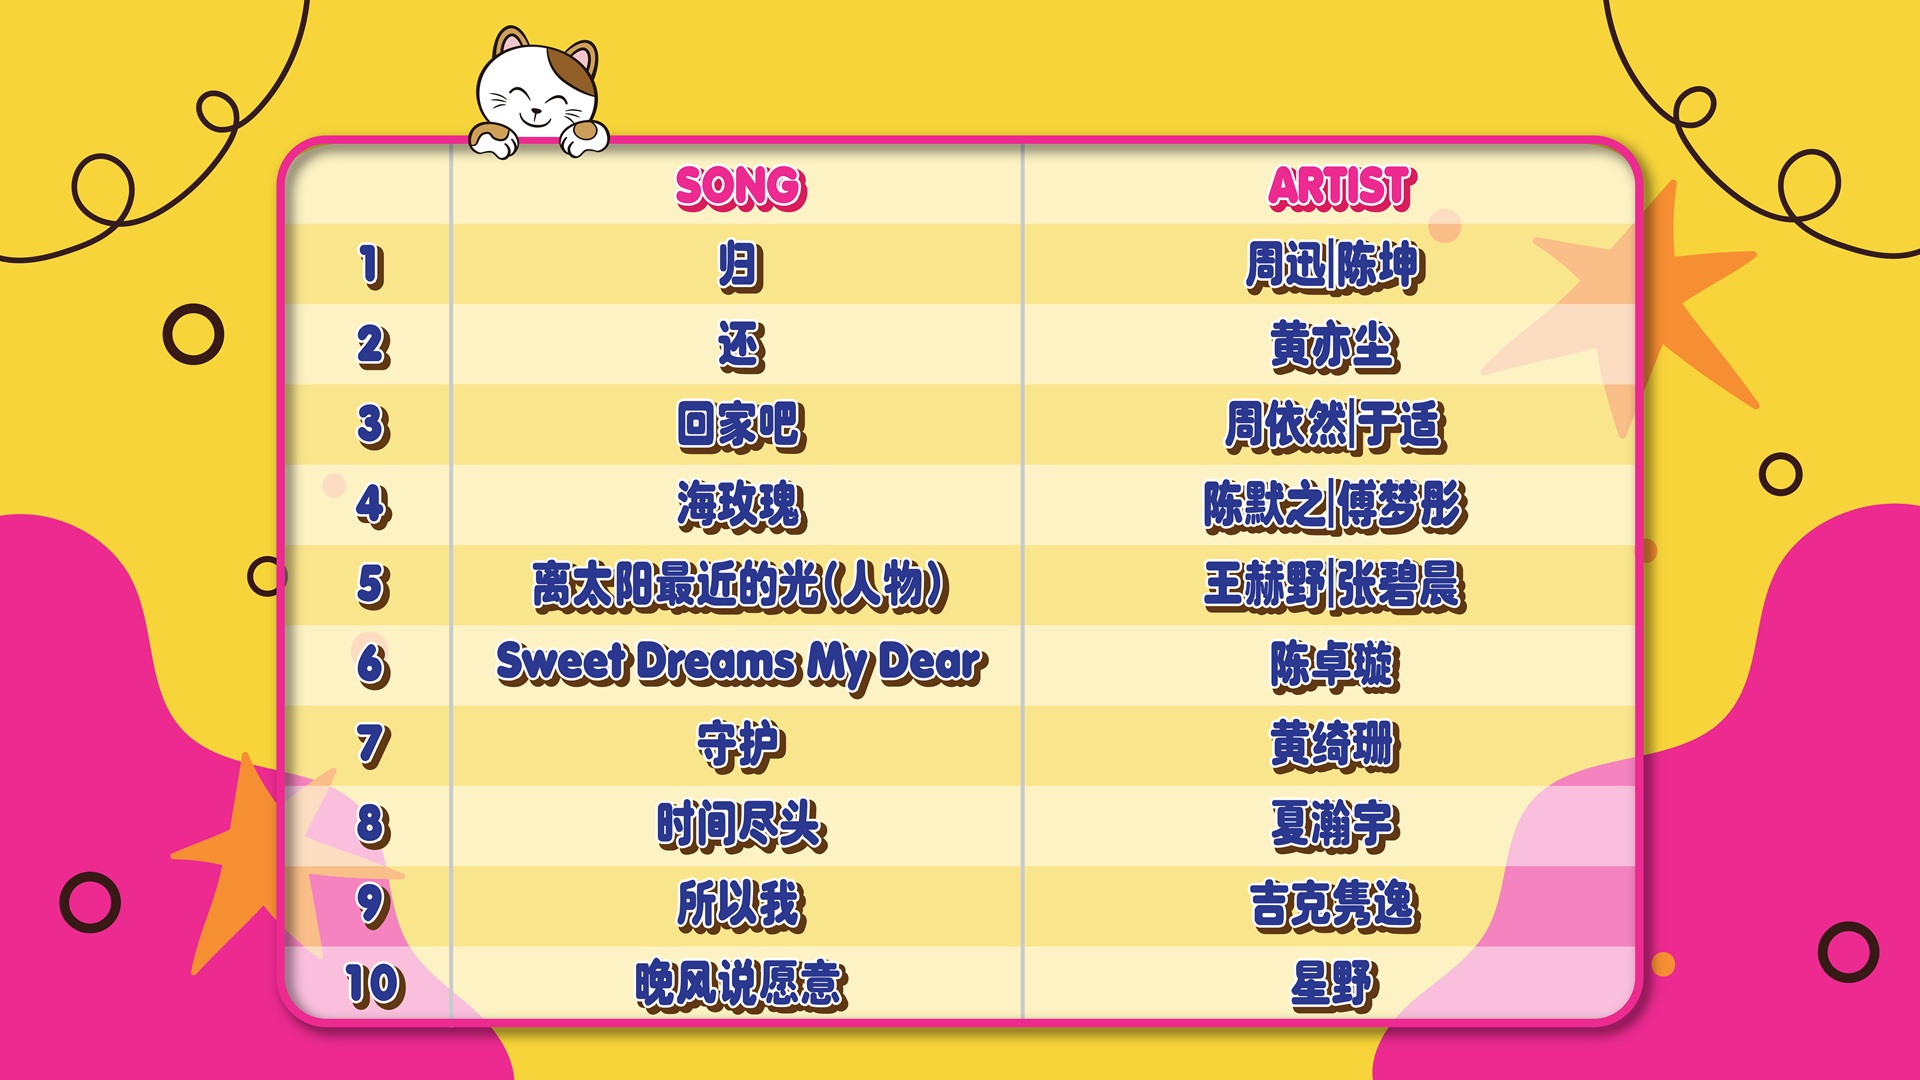 Song list_June_8 (1)